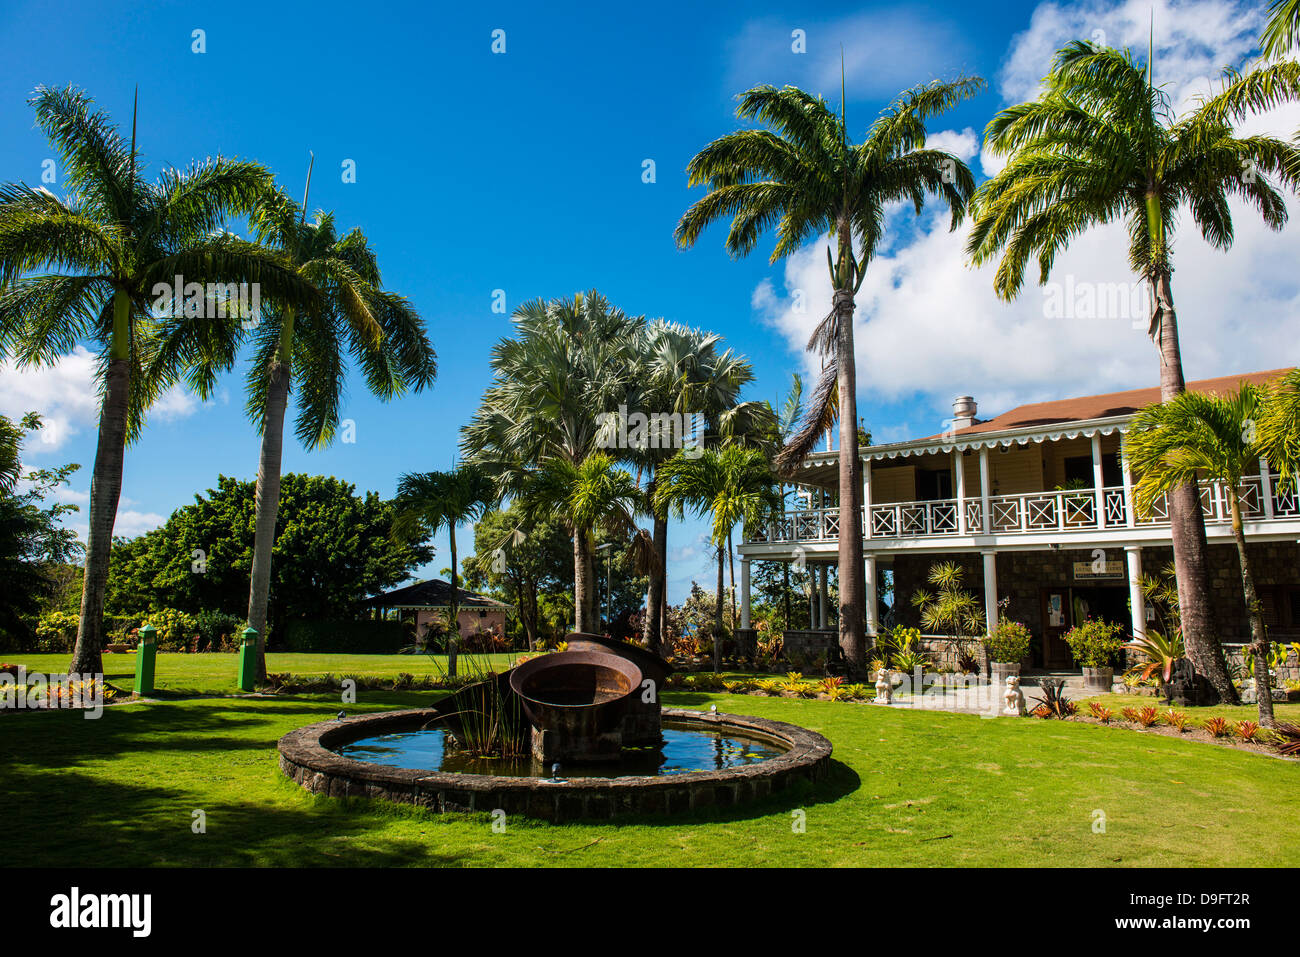 Manoir historique dans le jardin botanique sur l'île de Nevis, Saint Kitts et Nevis, Iles sous le vent, Antilles, Caraïbes Banque D'Images